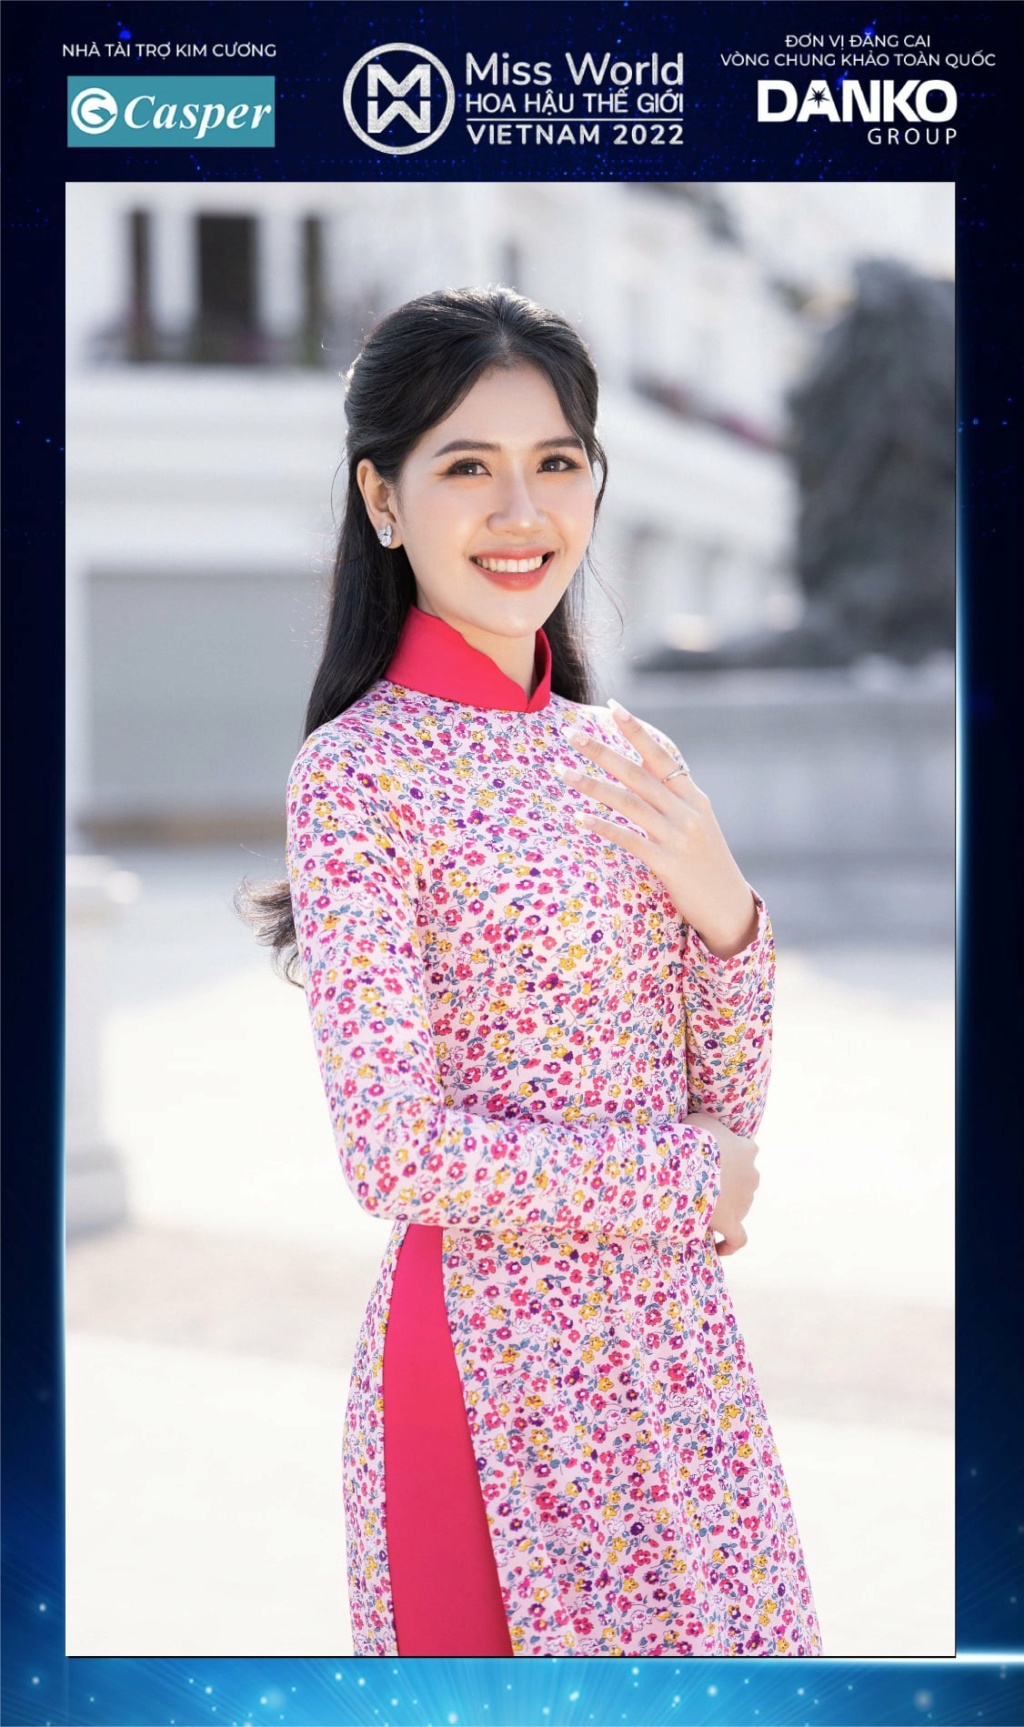 Miss World Vietnam 2022 27916010